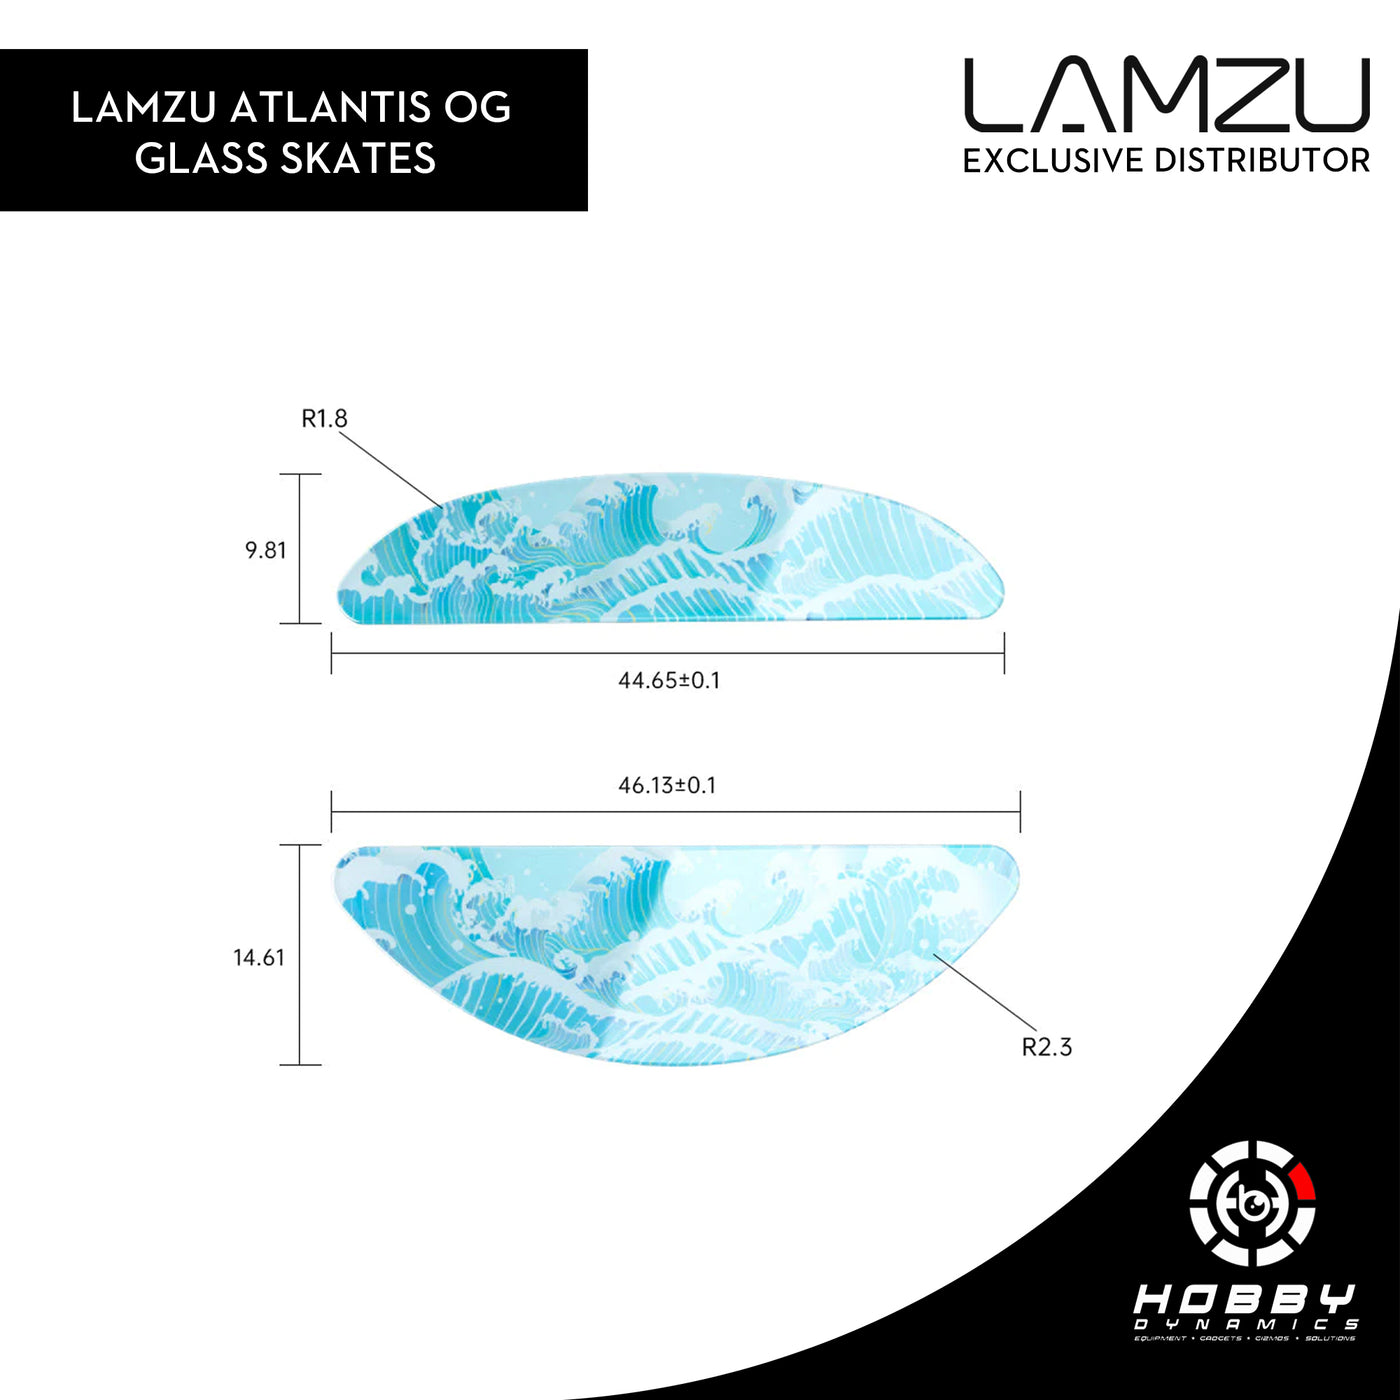 Lamzu Atlantis OG (V1) Glass Skates